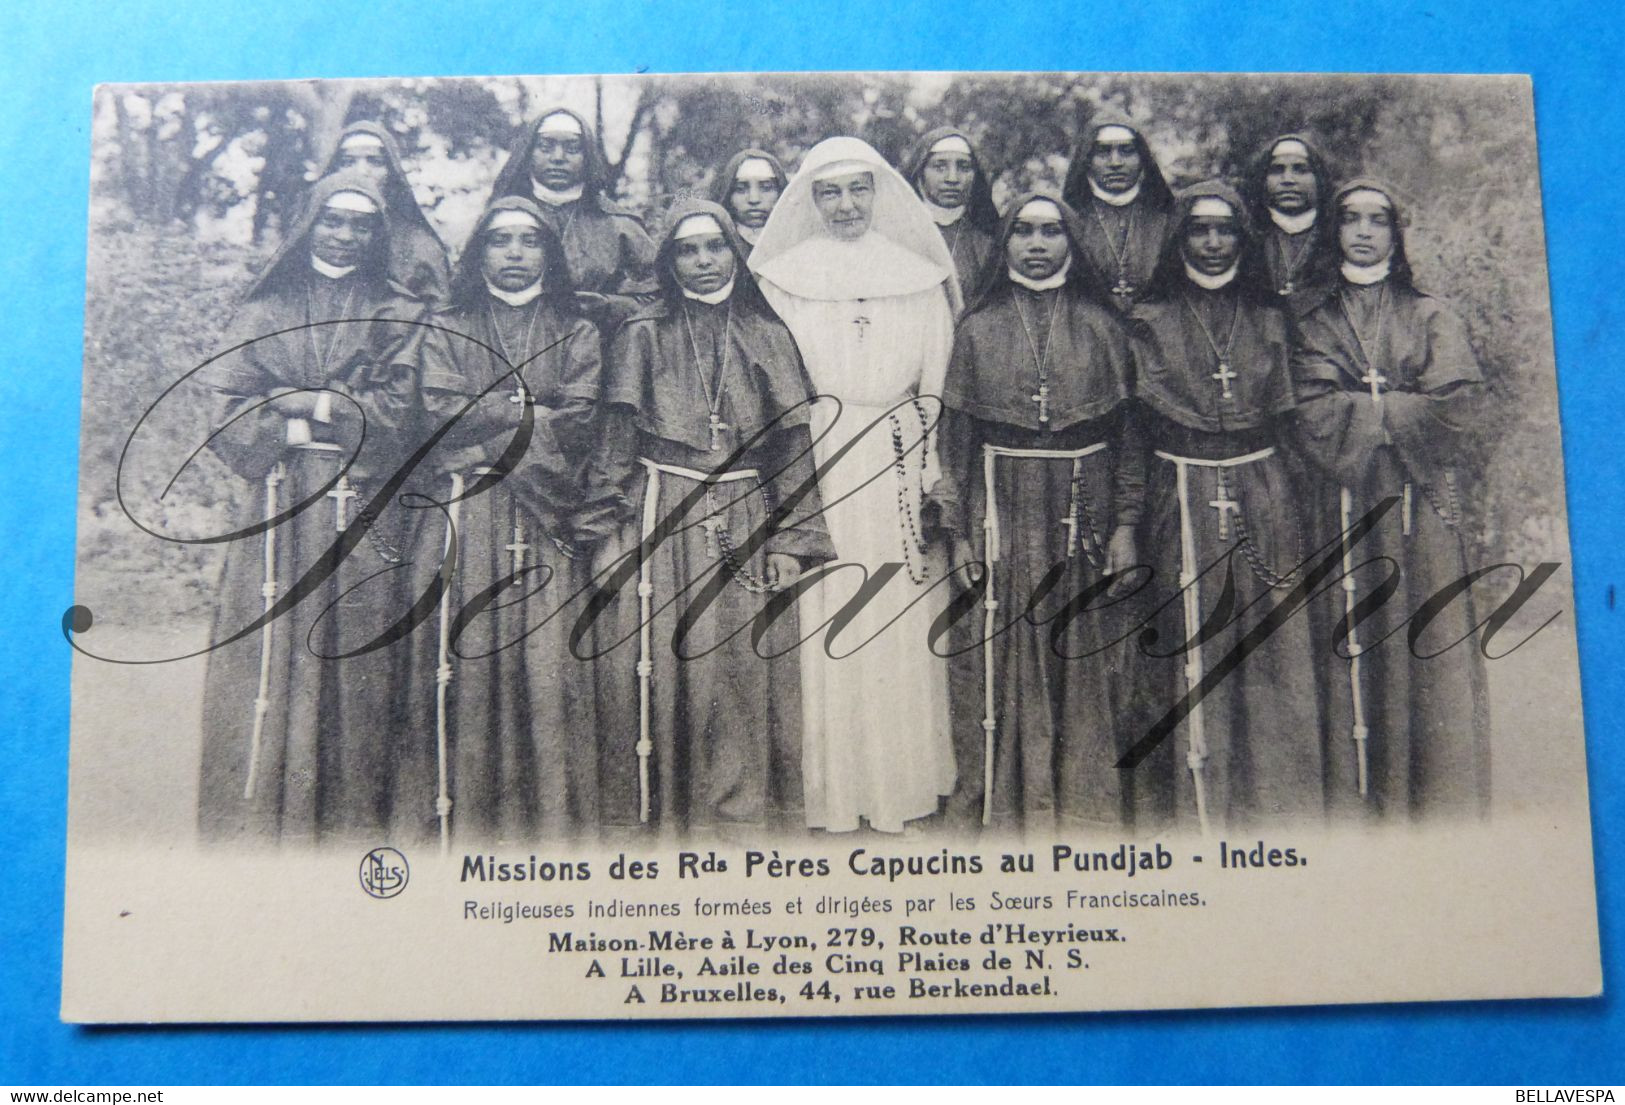 Belgische Katholieke Missie kaarten Mission Lot x 13 stuks